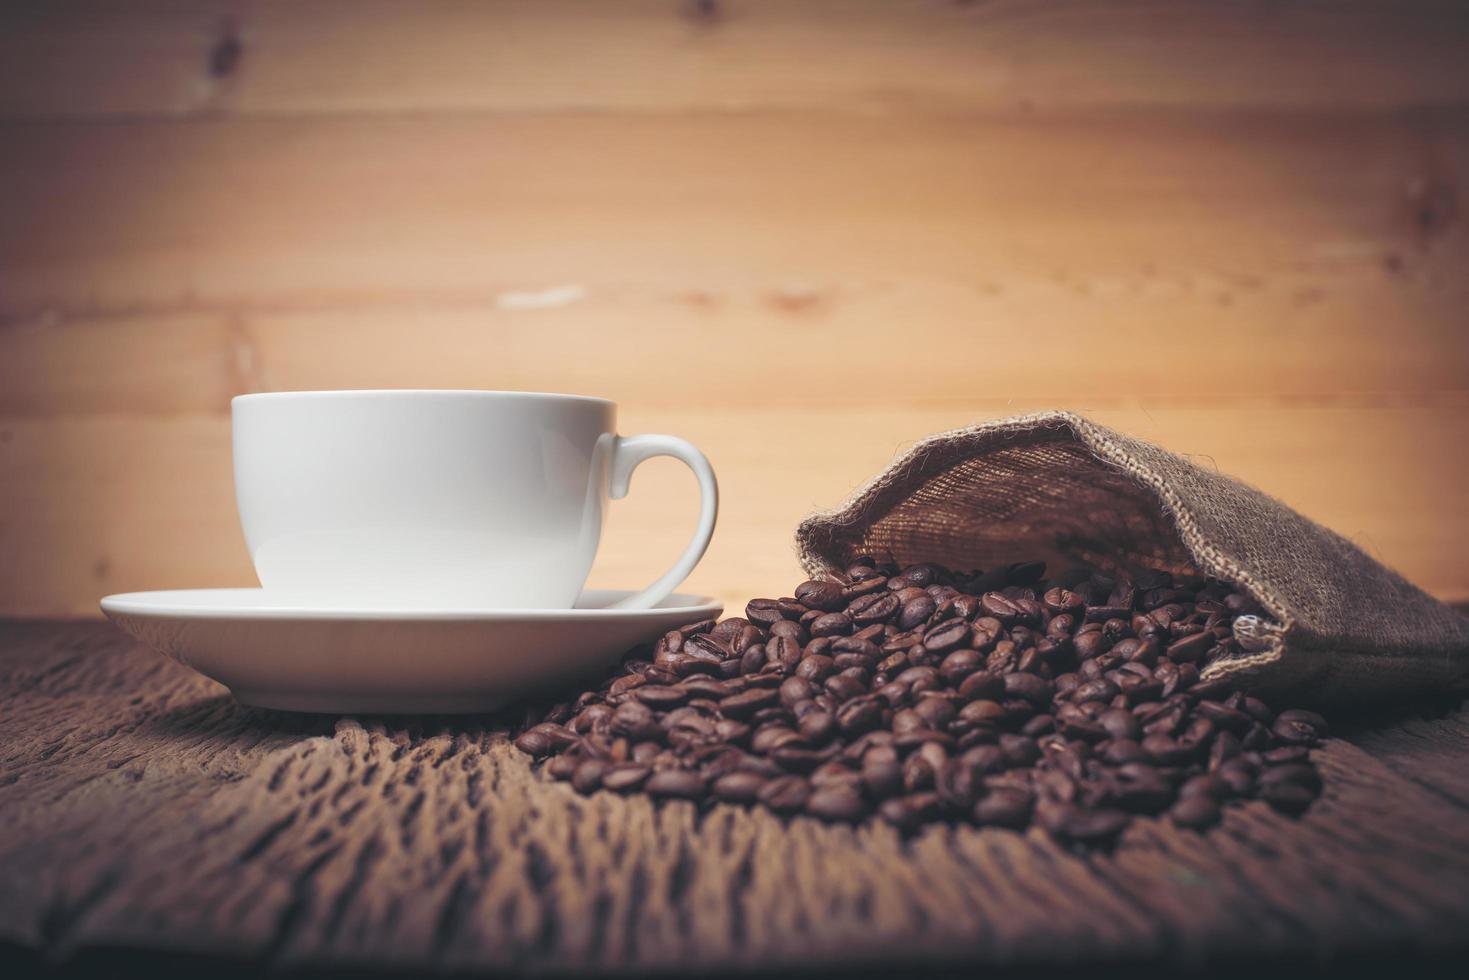 xícara de café com grãos de café em uma mesa de madeira foto